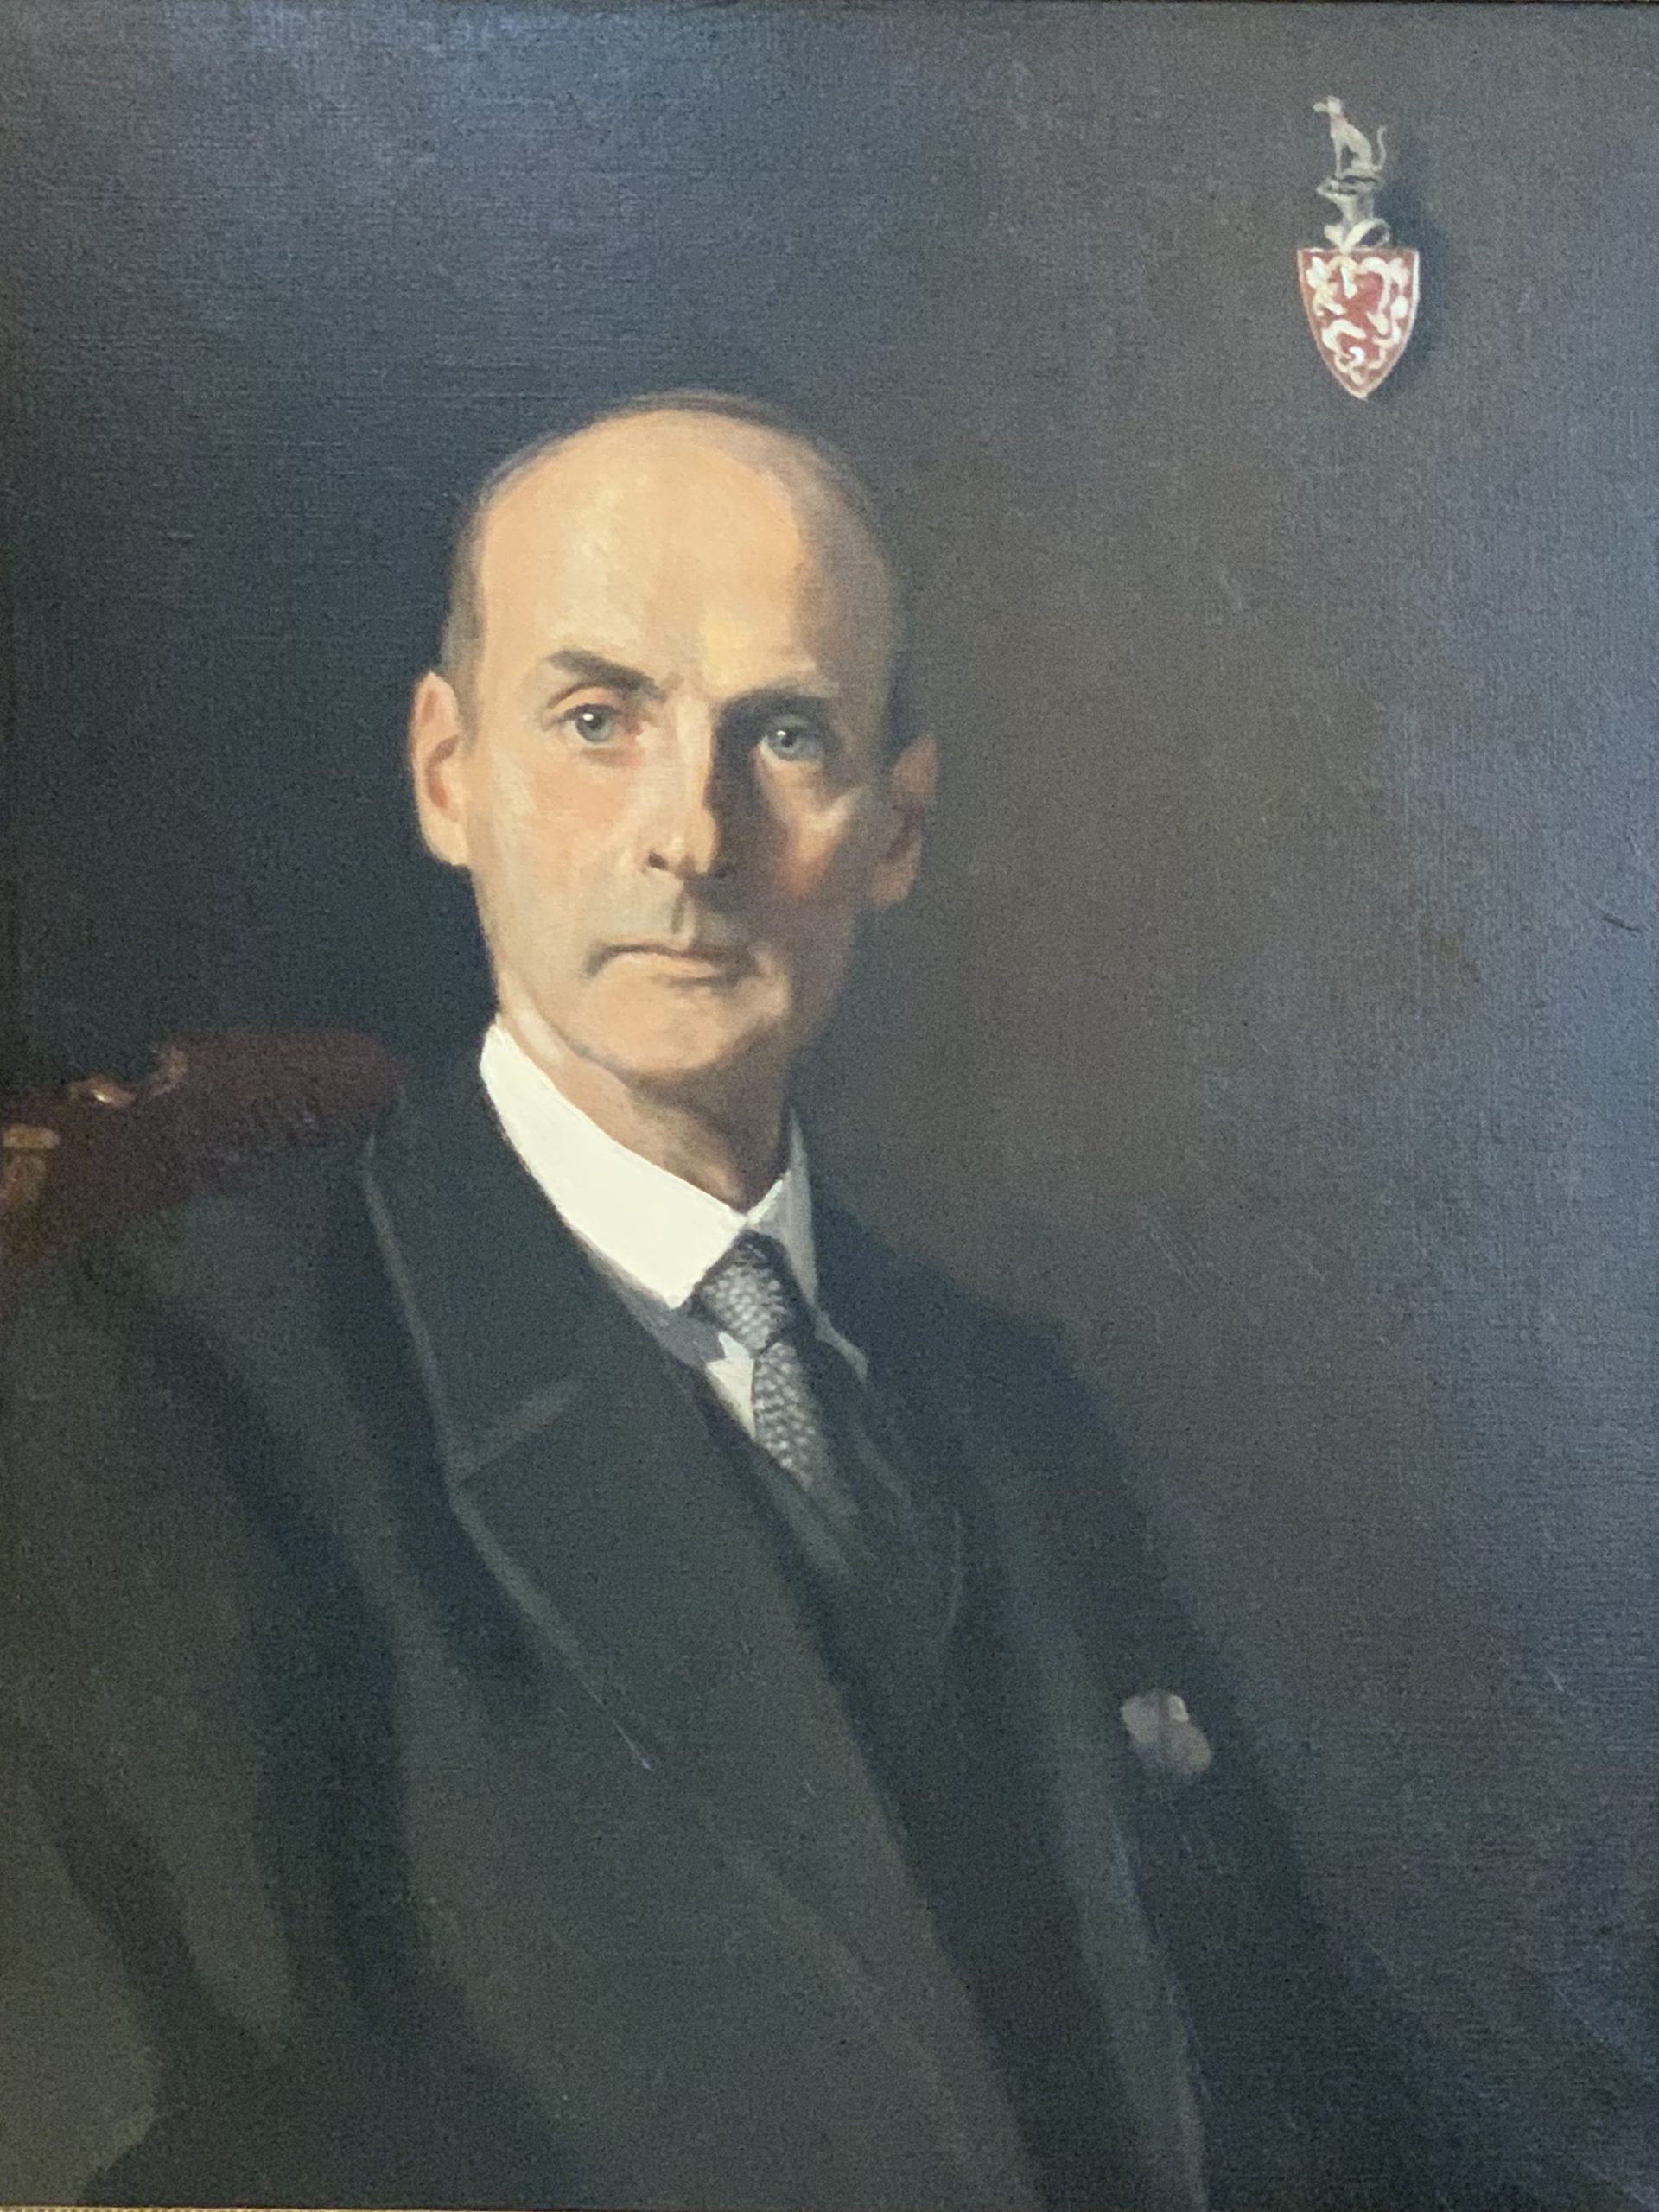 Portret burgemeester baron W.C. baron van Randwijck